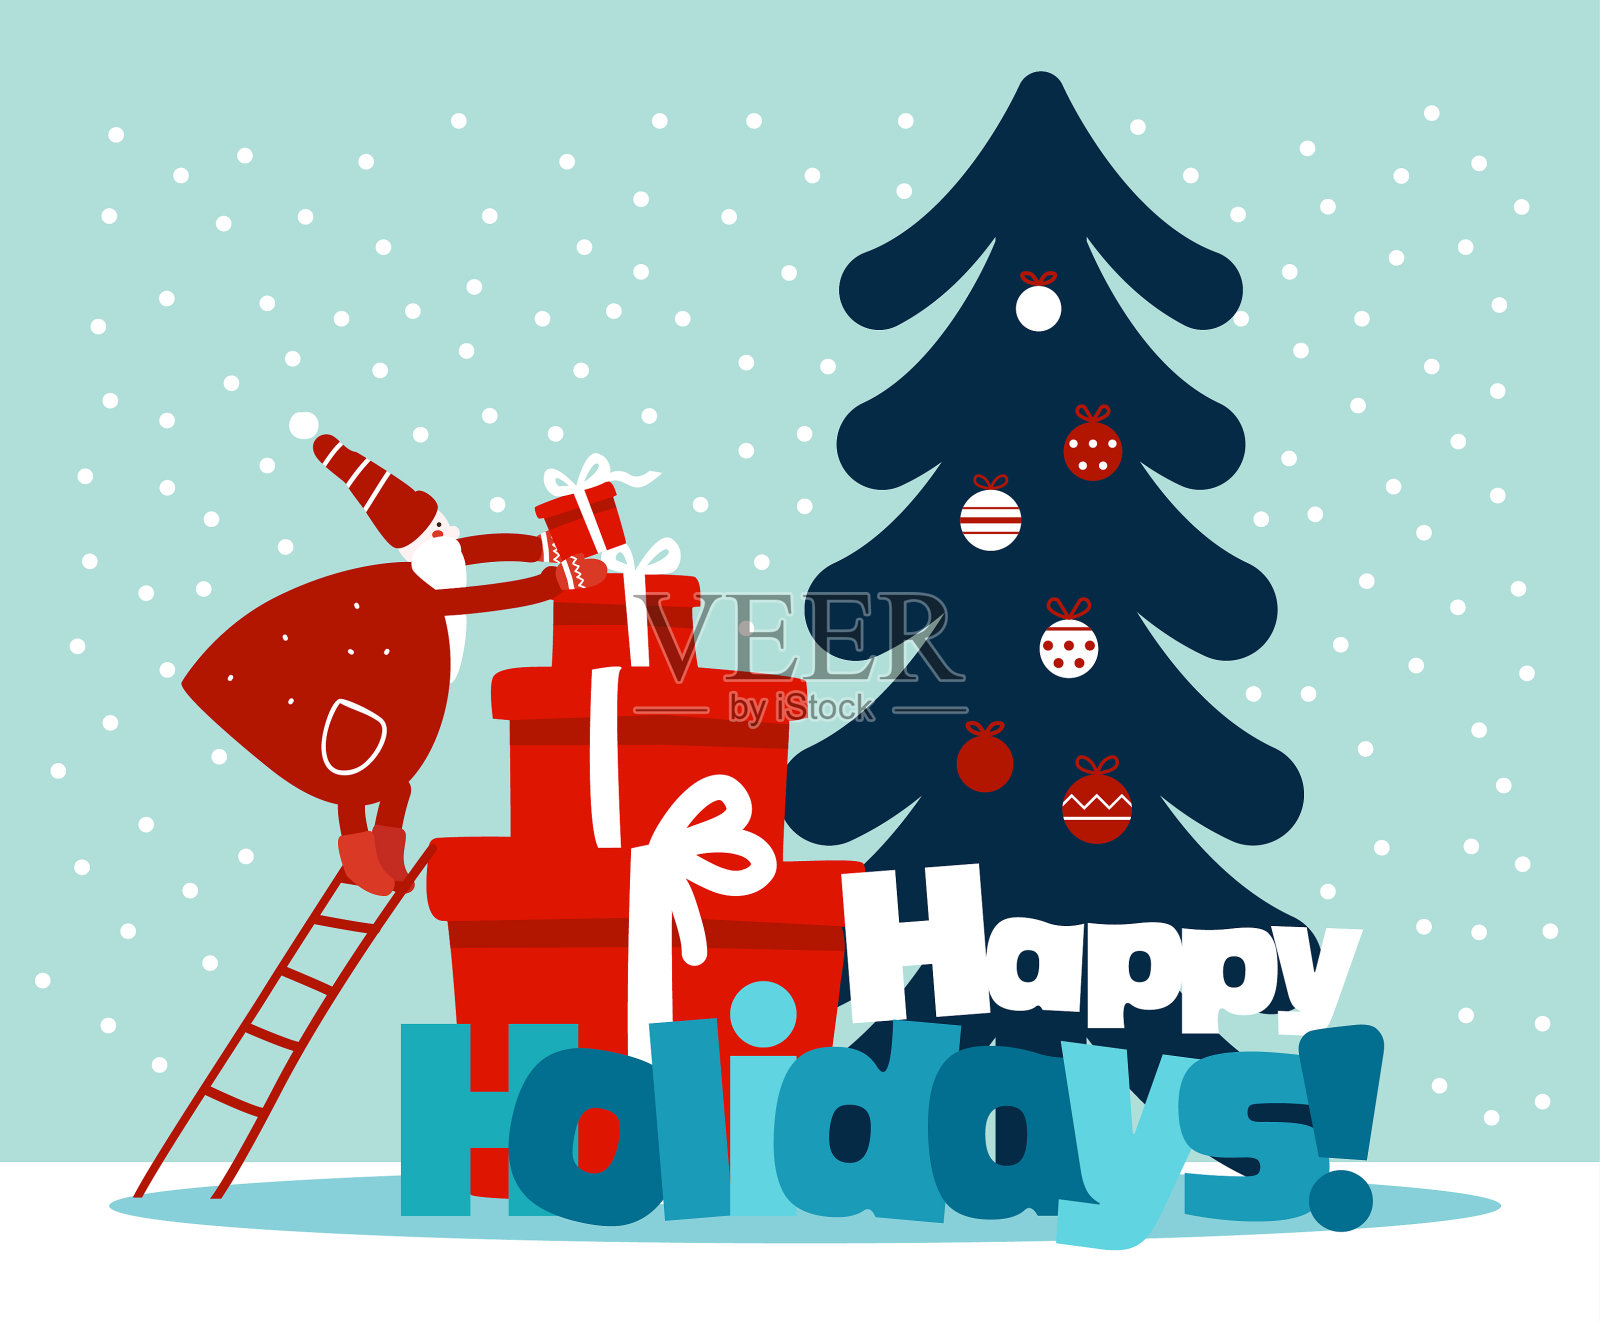 滑稽的圣诞老人拿着礼物上楼了。可爱的圣诞和新年矢量插图与礼物和圣诞树装饰与节日玩具。有趣的寒假背景和卡片设计模板素材